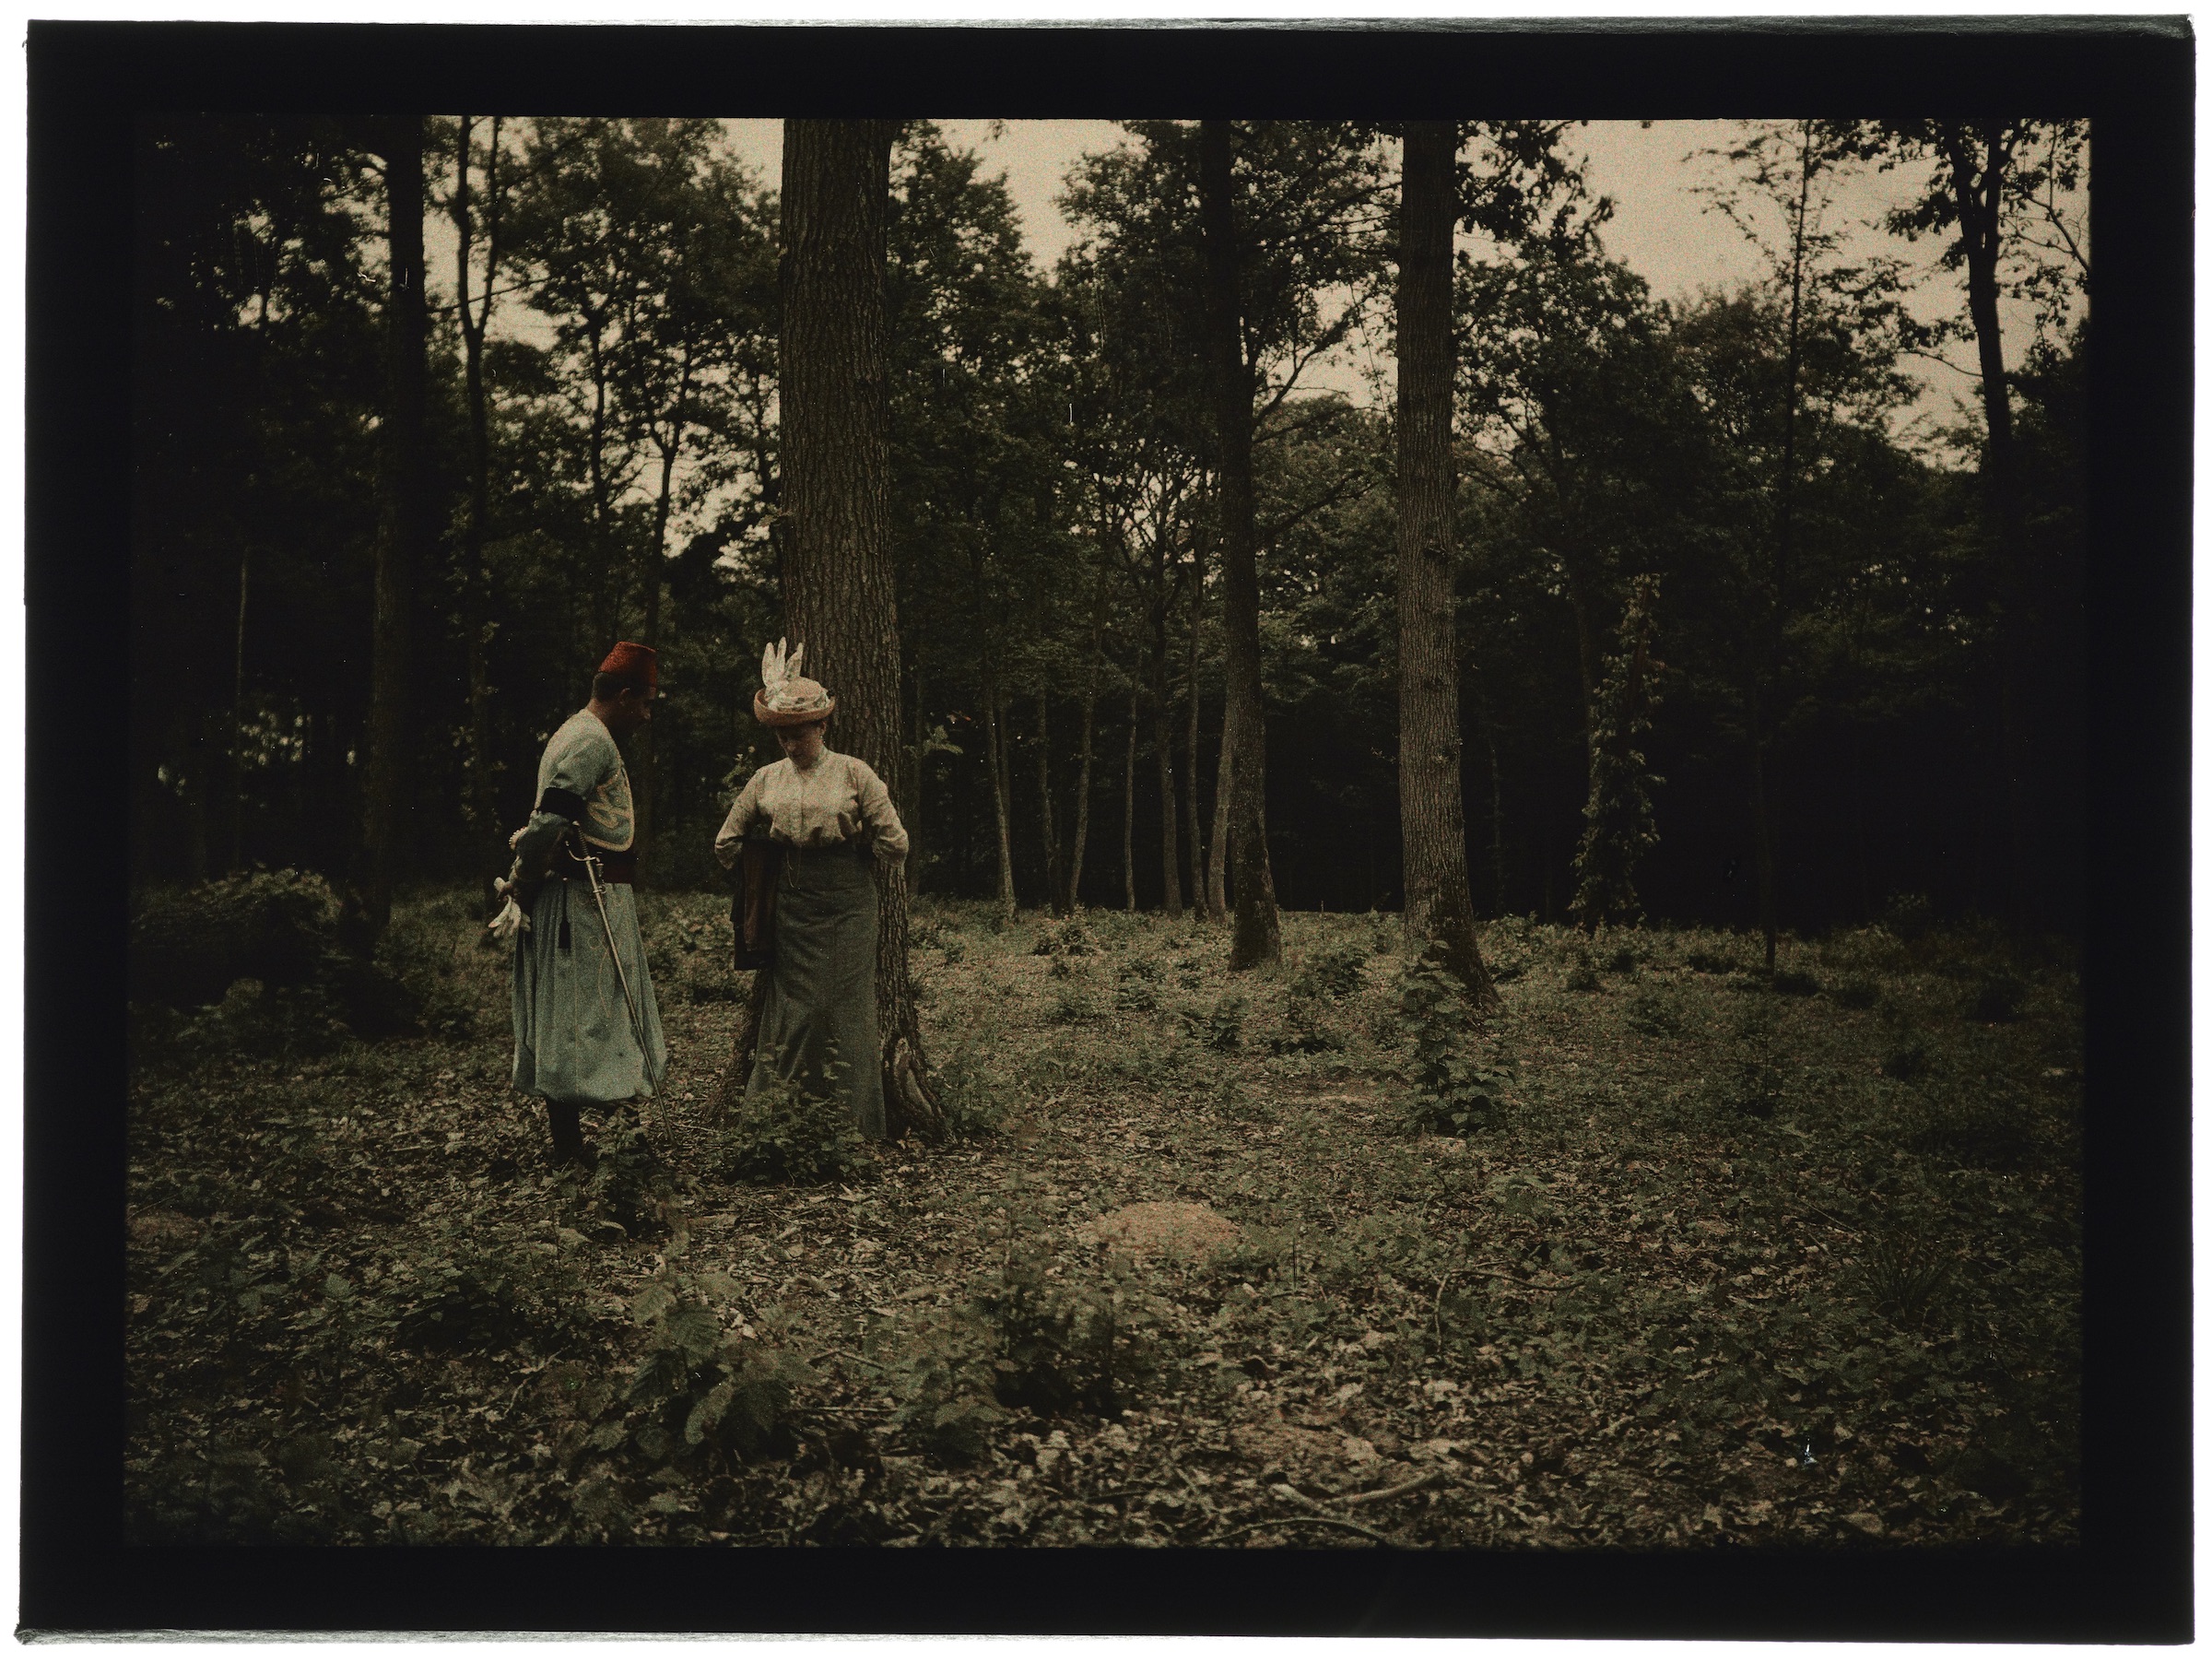 Femme dans la forêt avec un soldat